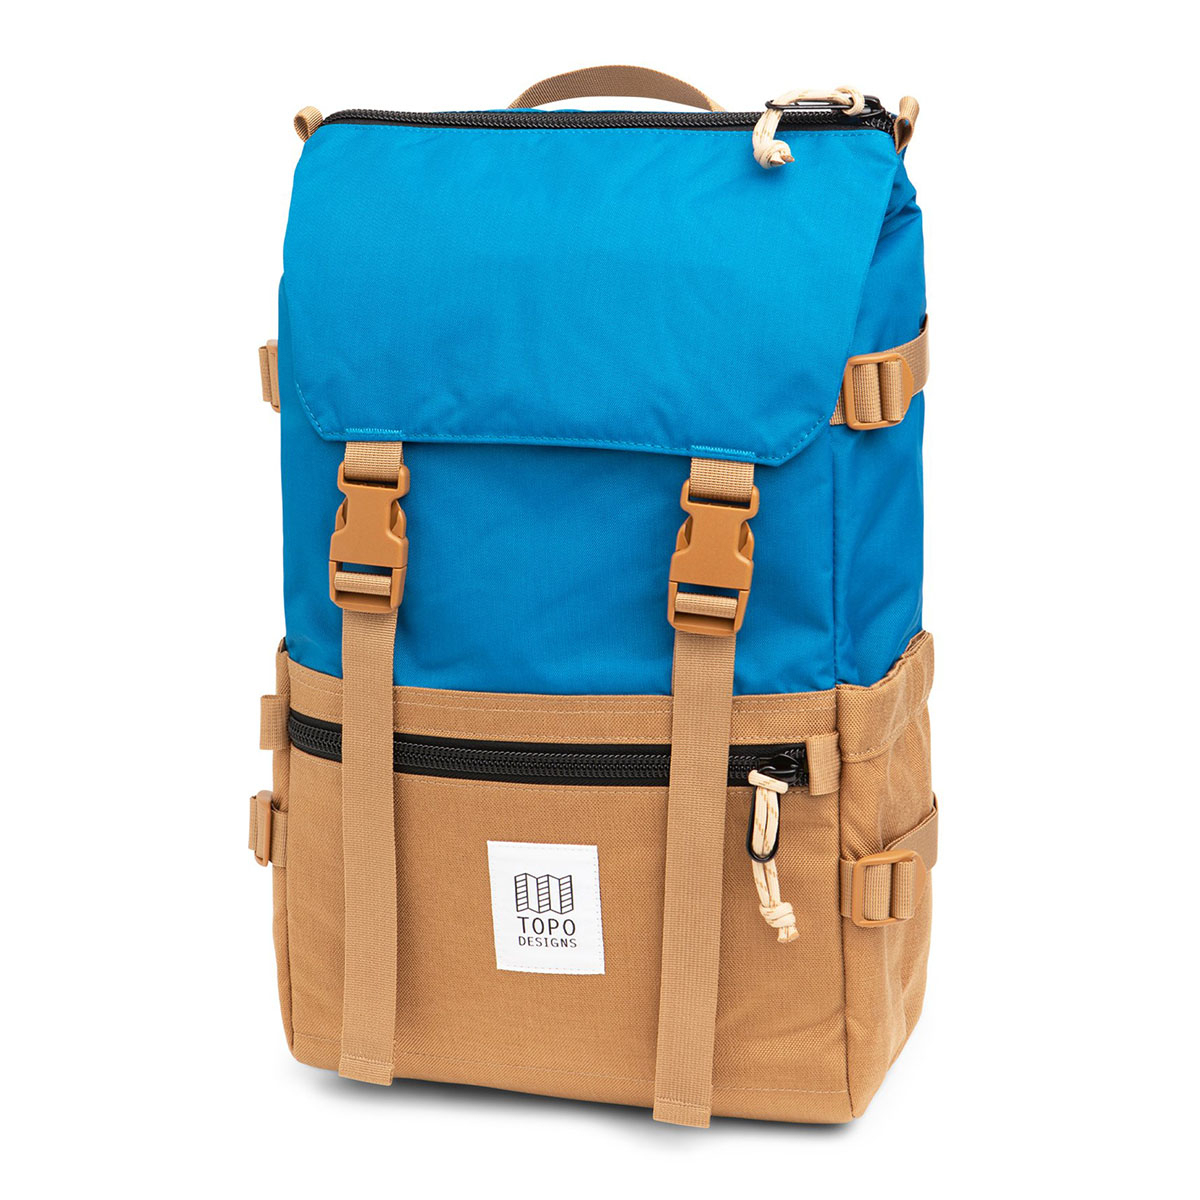 Topo Designs Rover Pack Classic Blue/Khaki, der ideale Rucksack für den täglichen Gebrauch